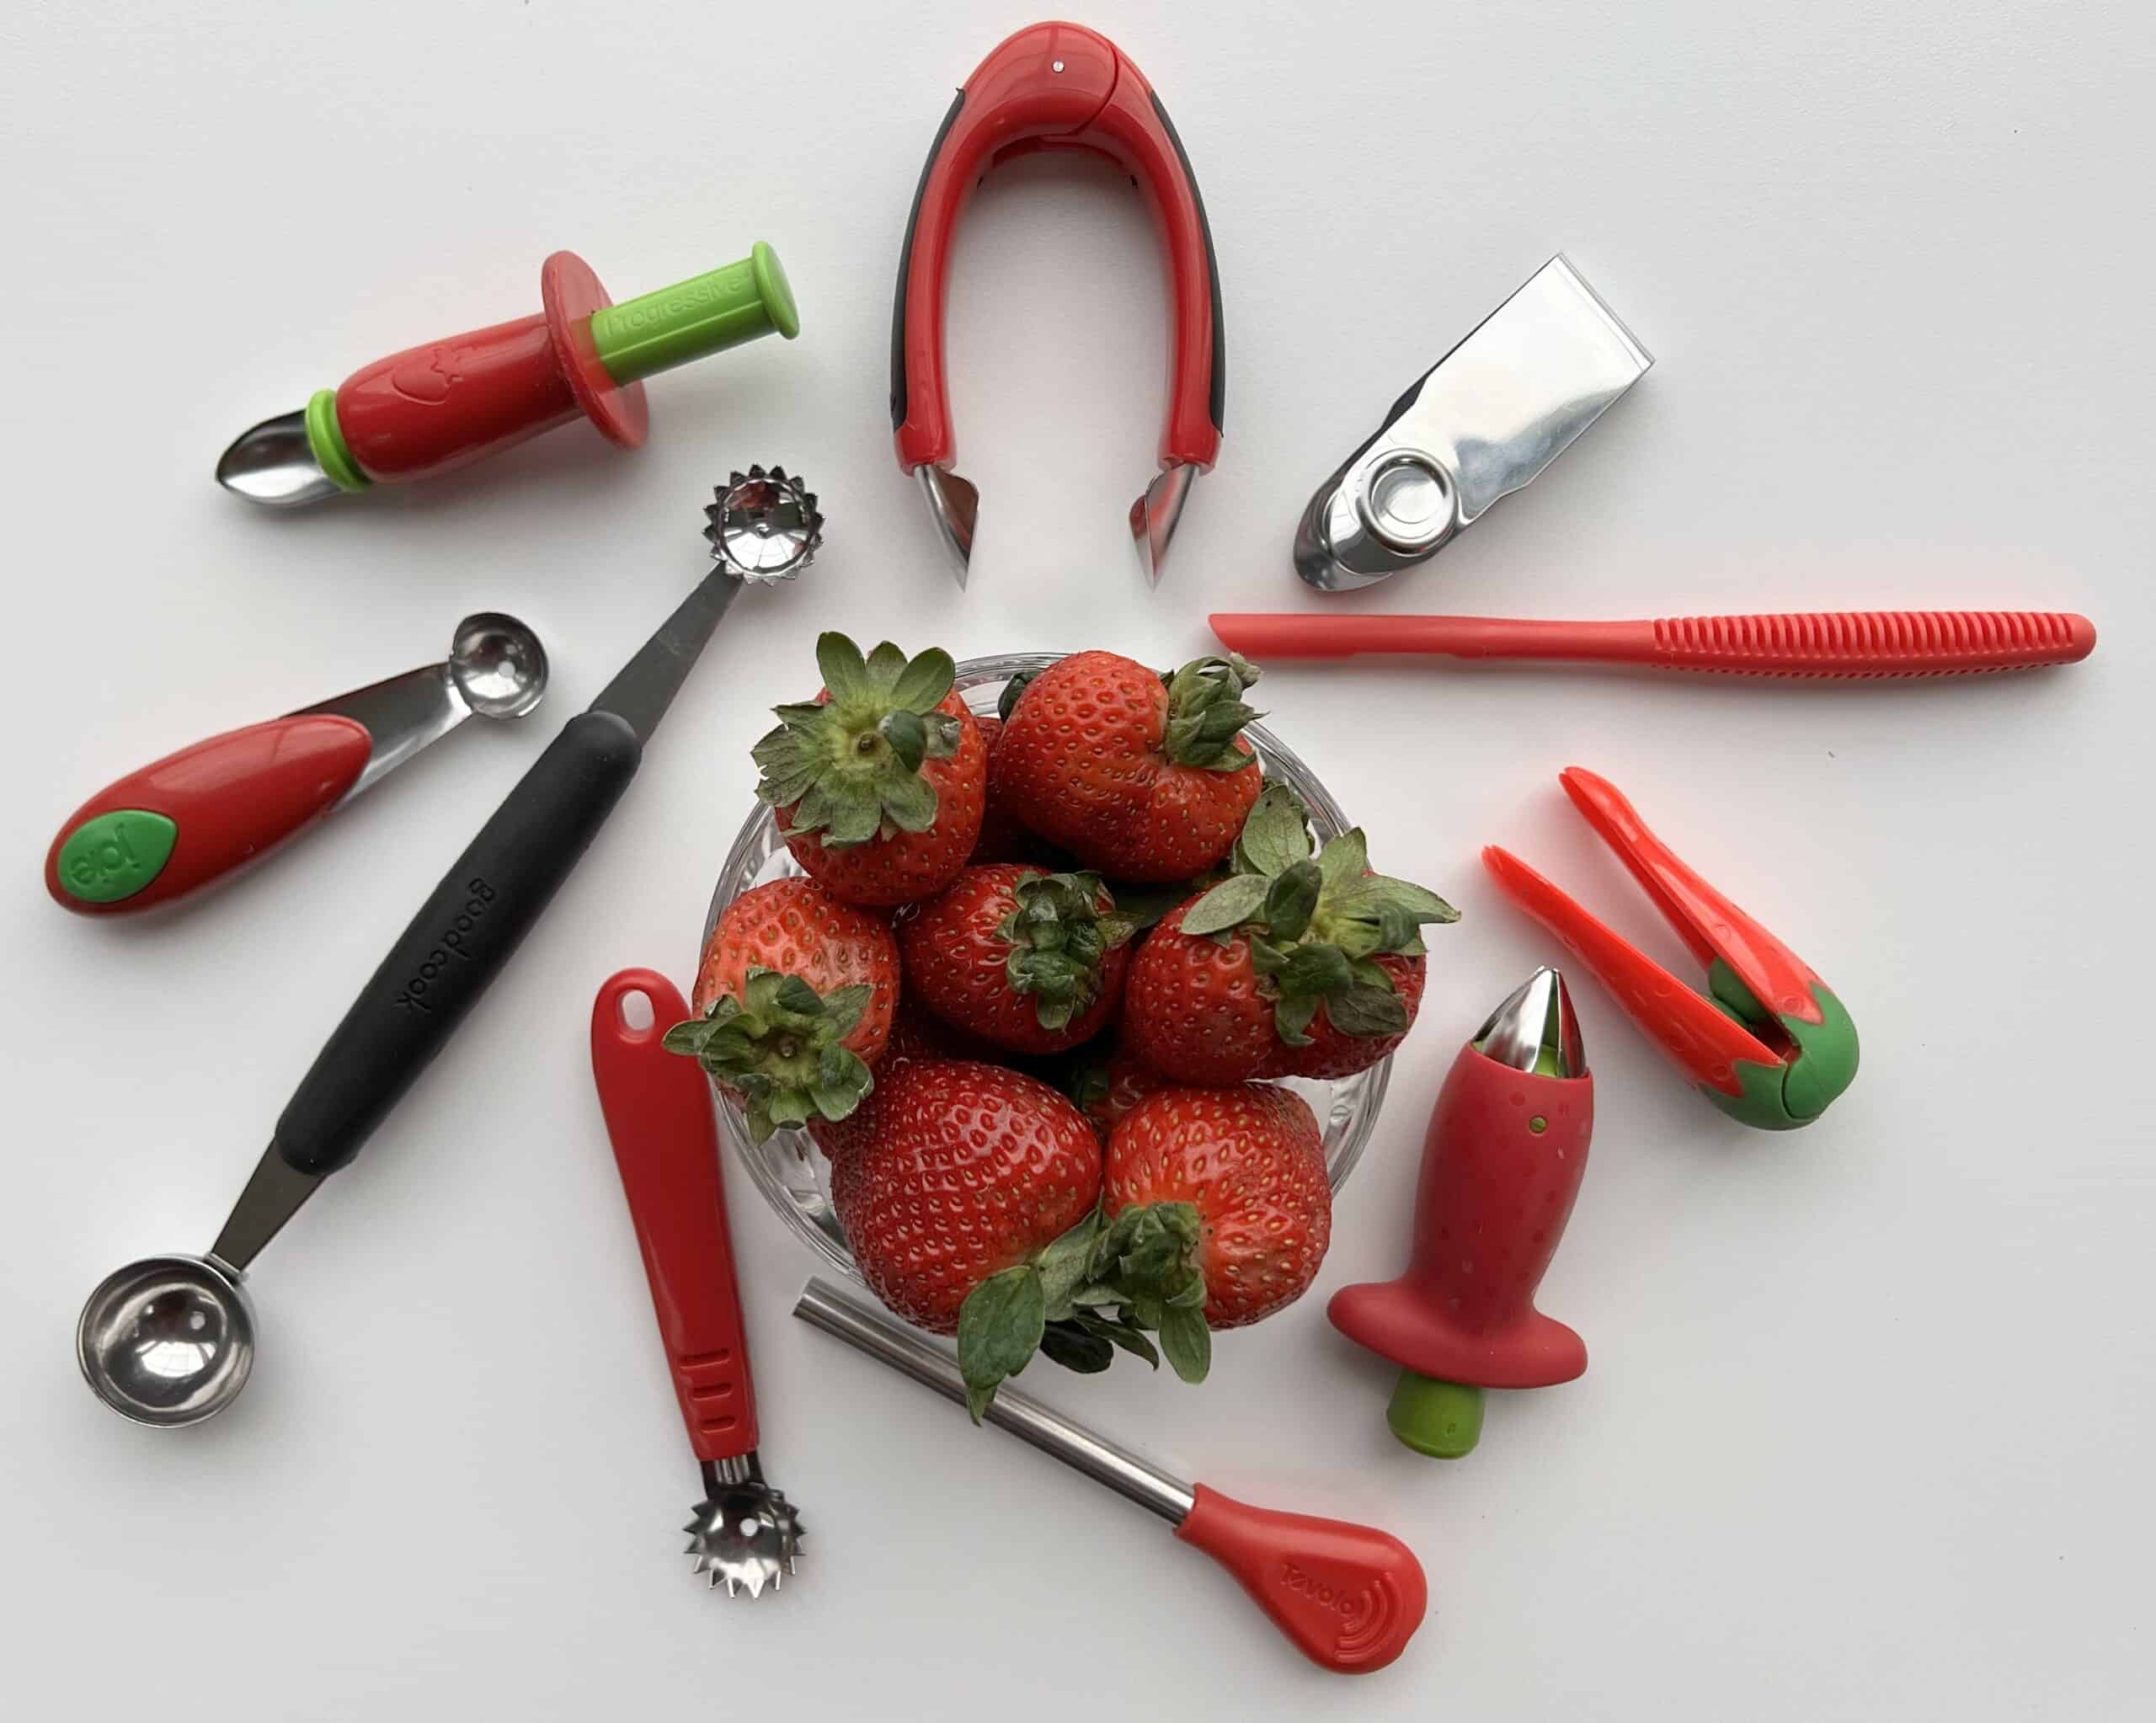 Joie Mini Mandoline Kitchen Gadget Product Review 